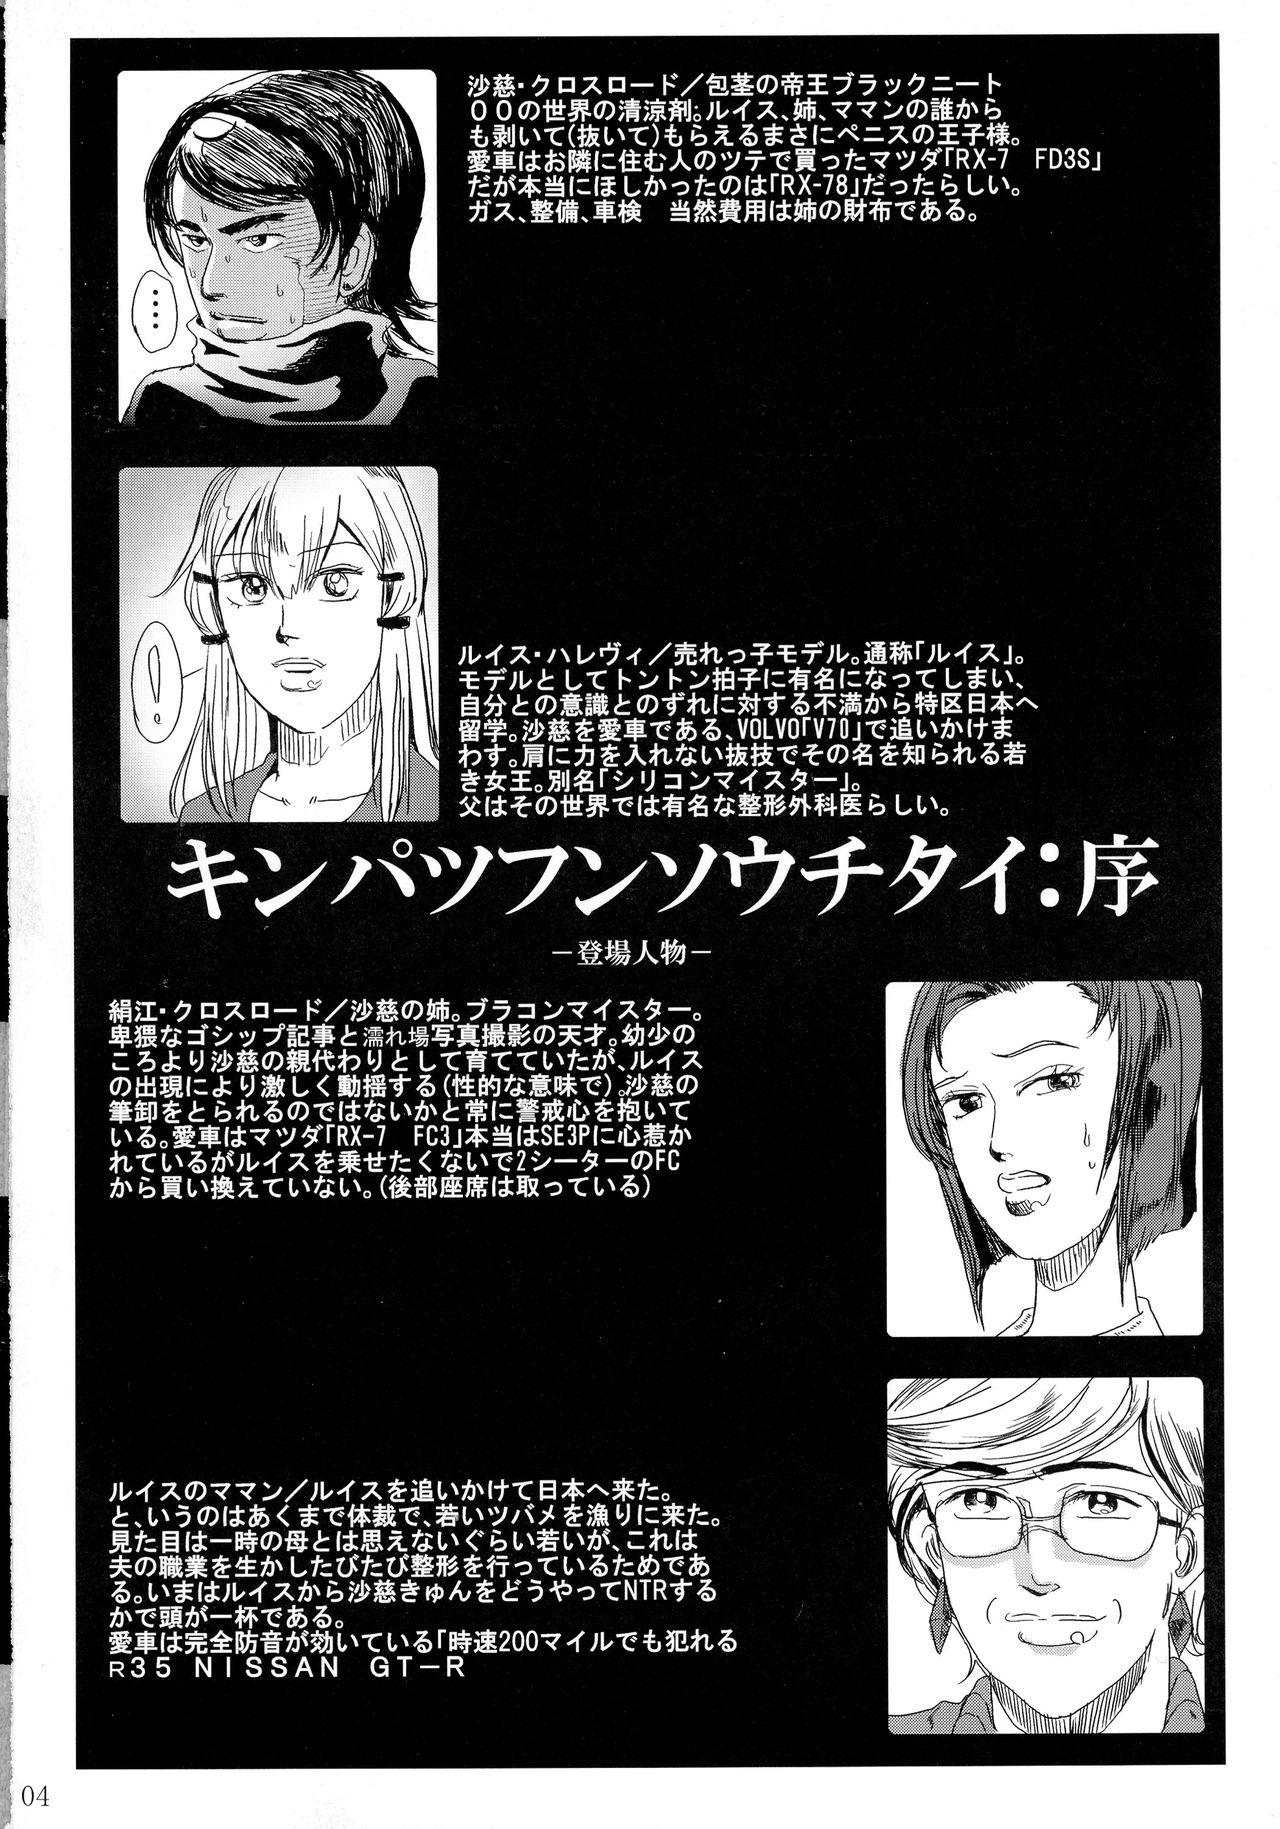 Rubbing Kinpatsu Funsou Chitai - Gundam 00 Danish - Page 3